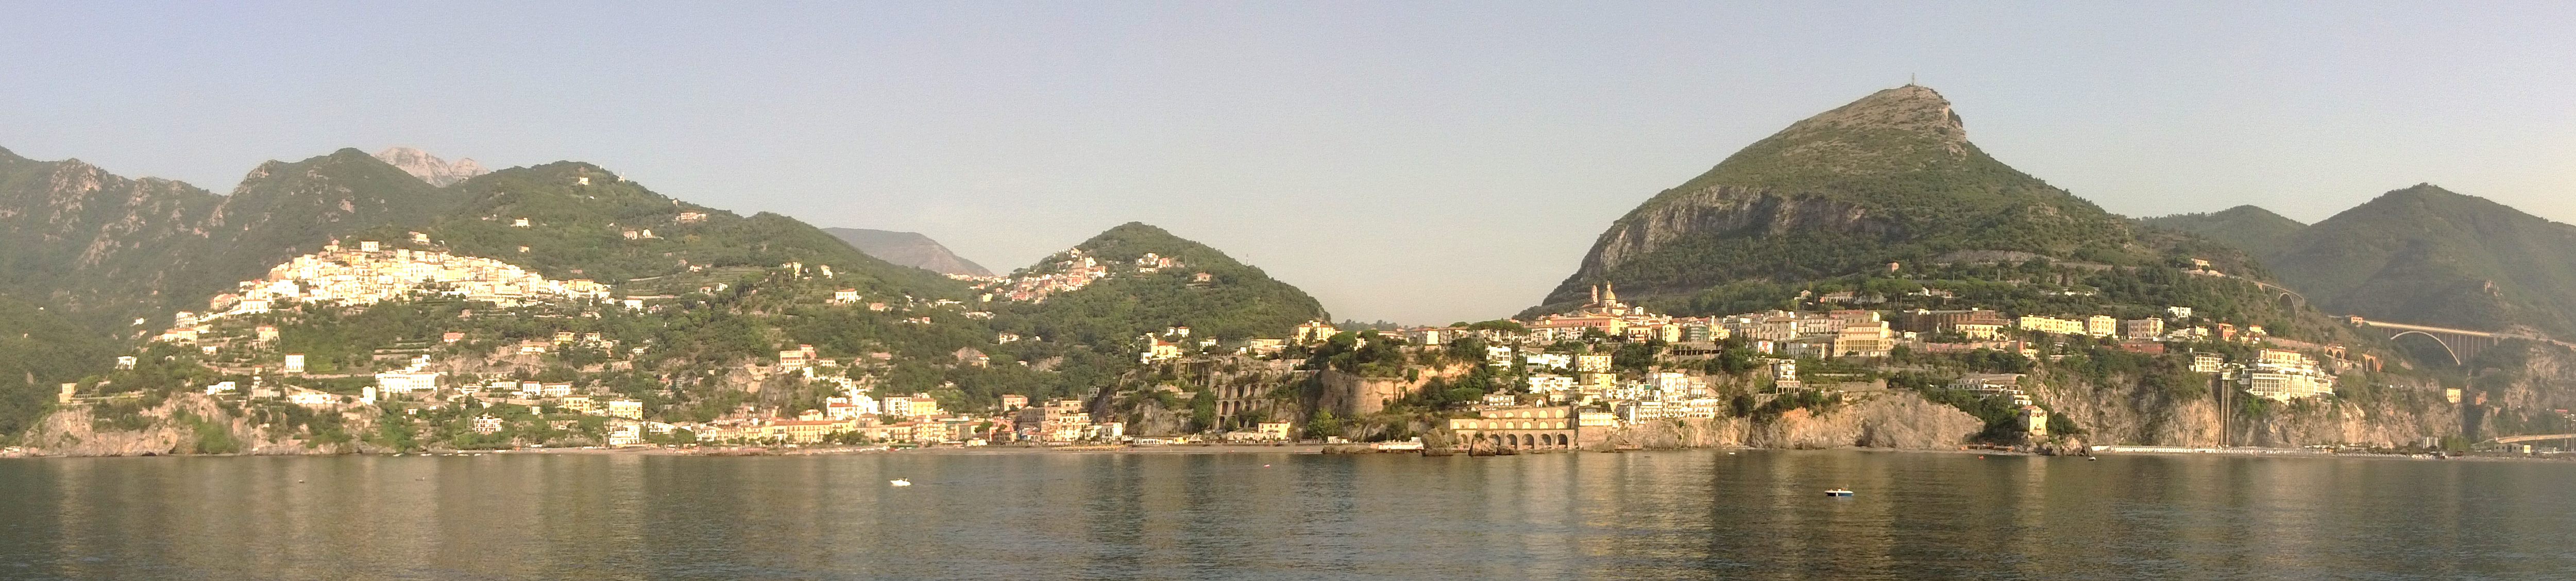 Bild "Reisen:2015_09_Italien_und_Sizilien_Vietri_sul_Mare_bei_Salerno.jpg"